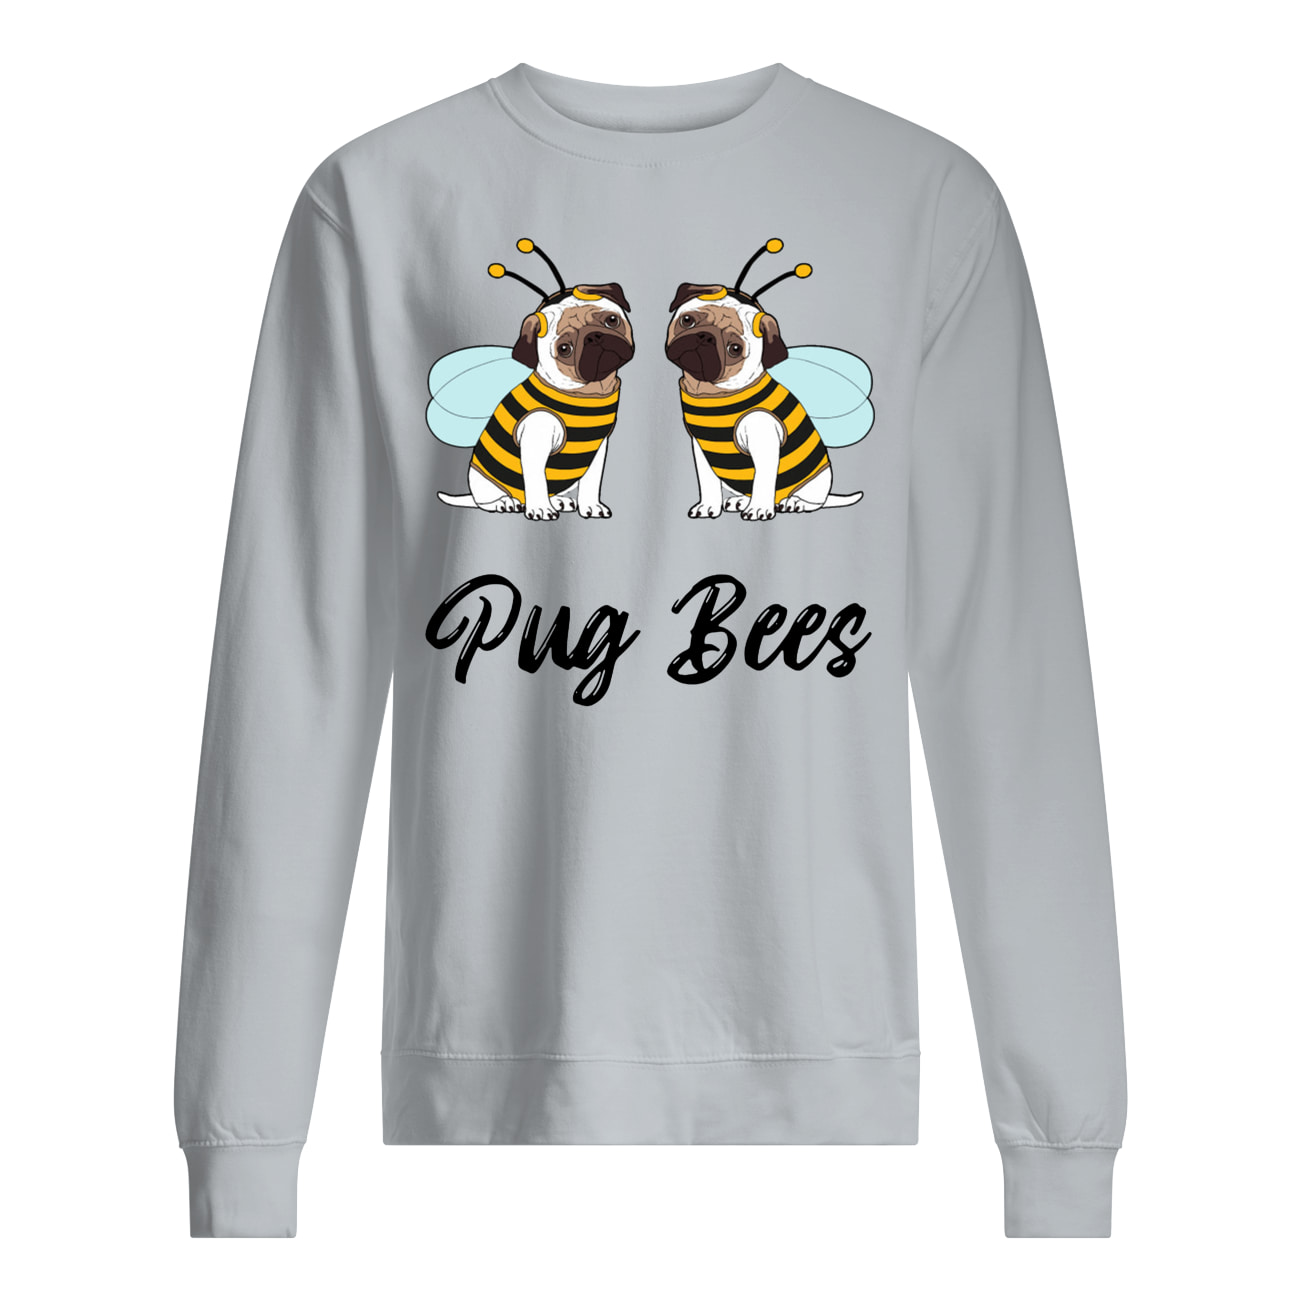 Pug bees couples sweatshirt